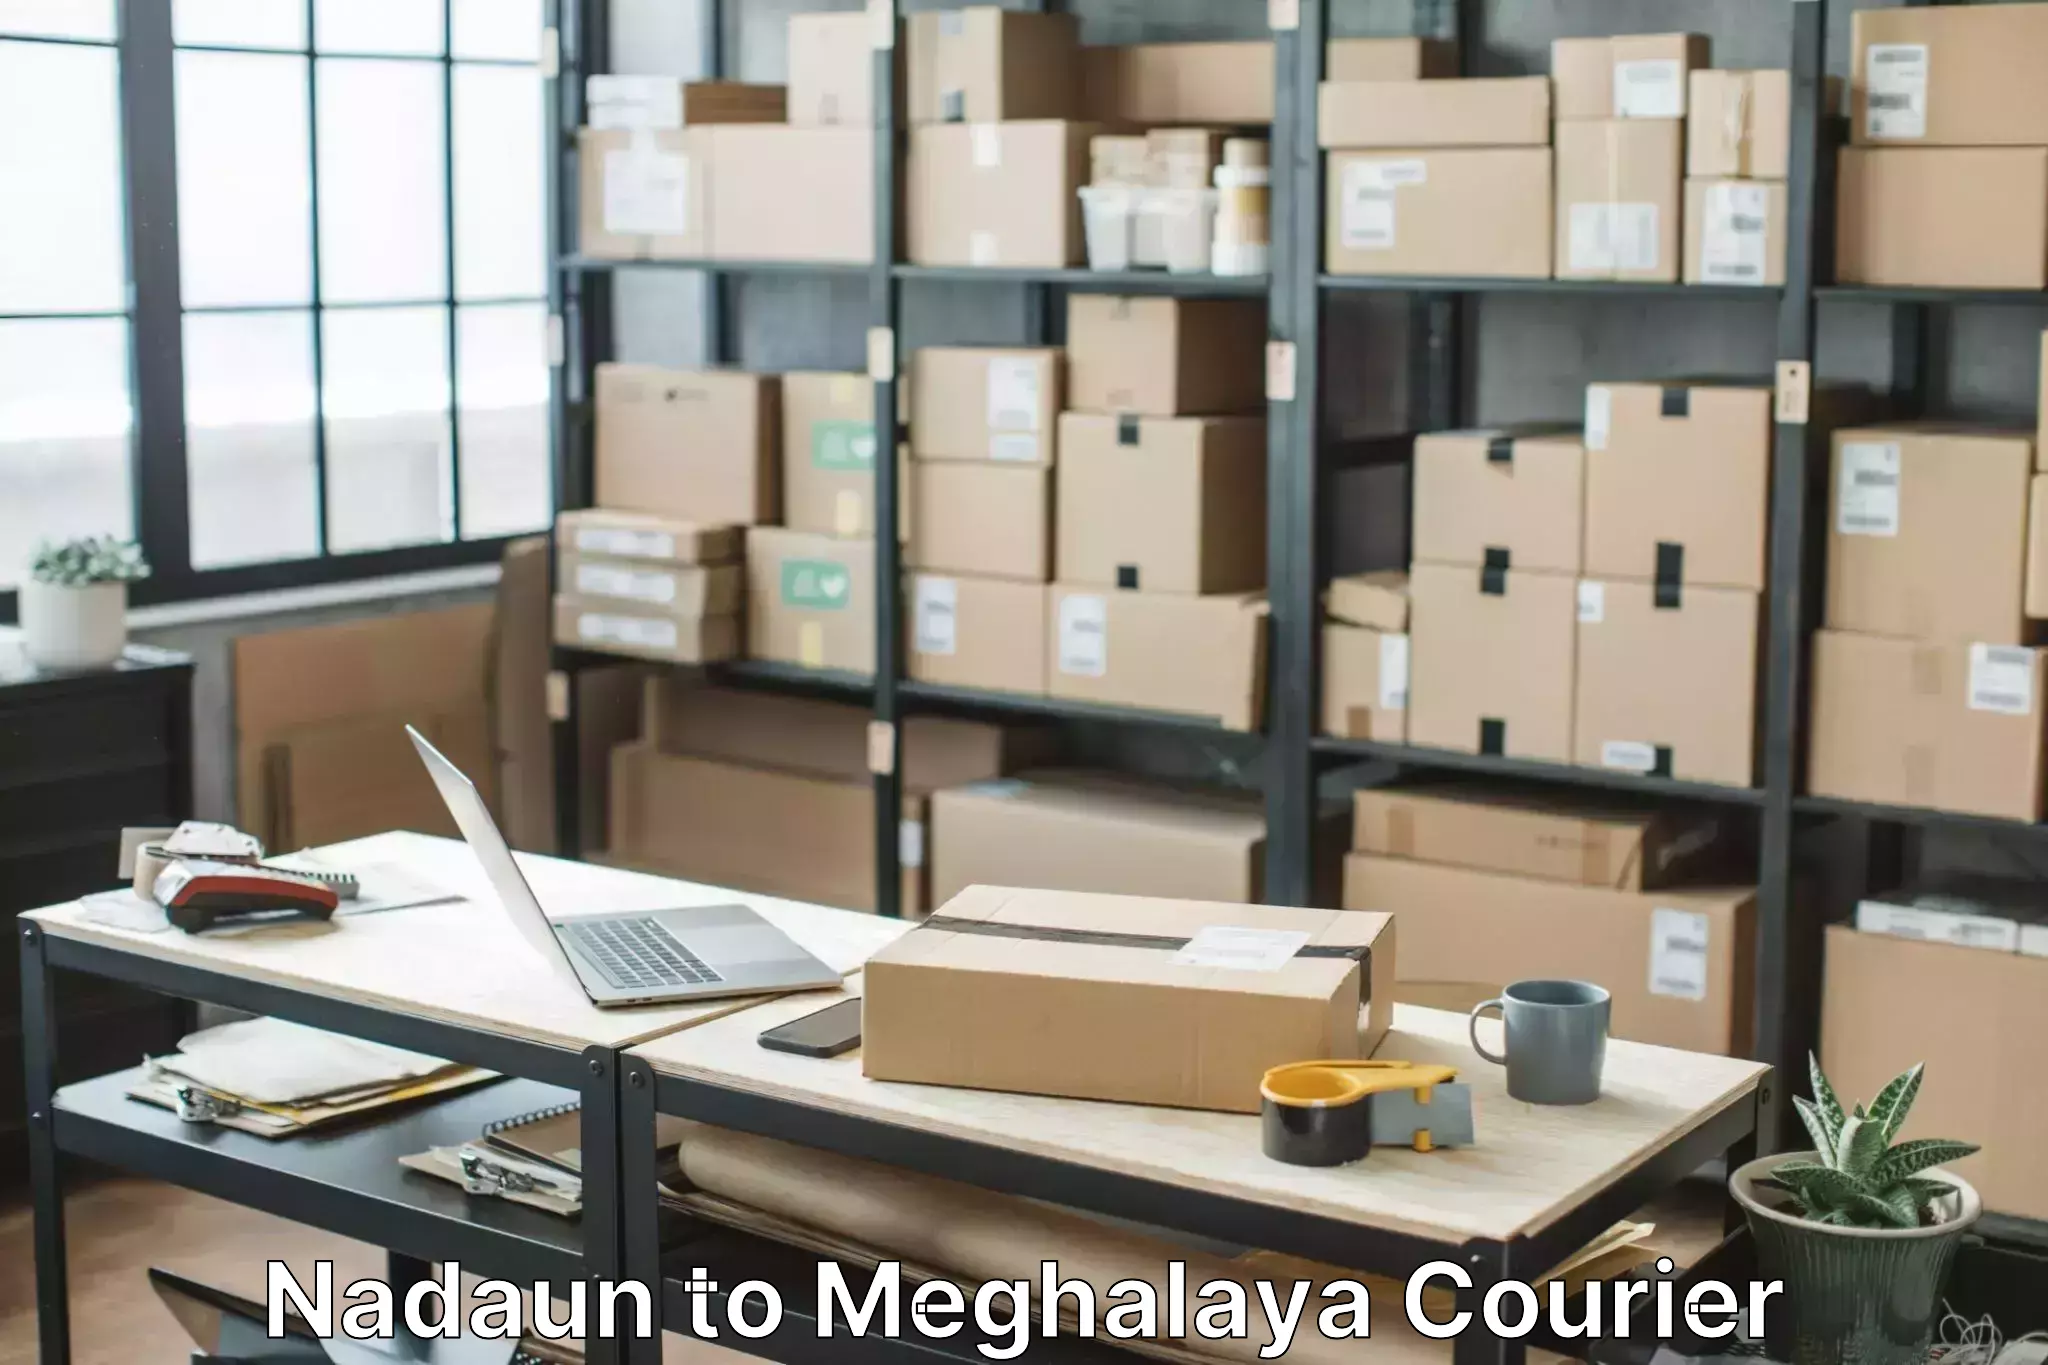 Full-service household moving Nadaun to Meghalaya